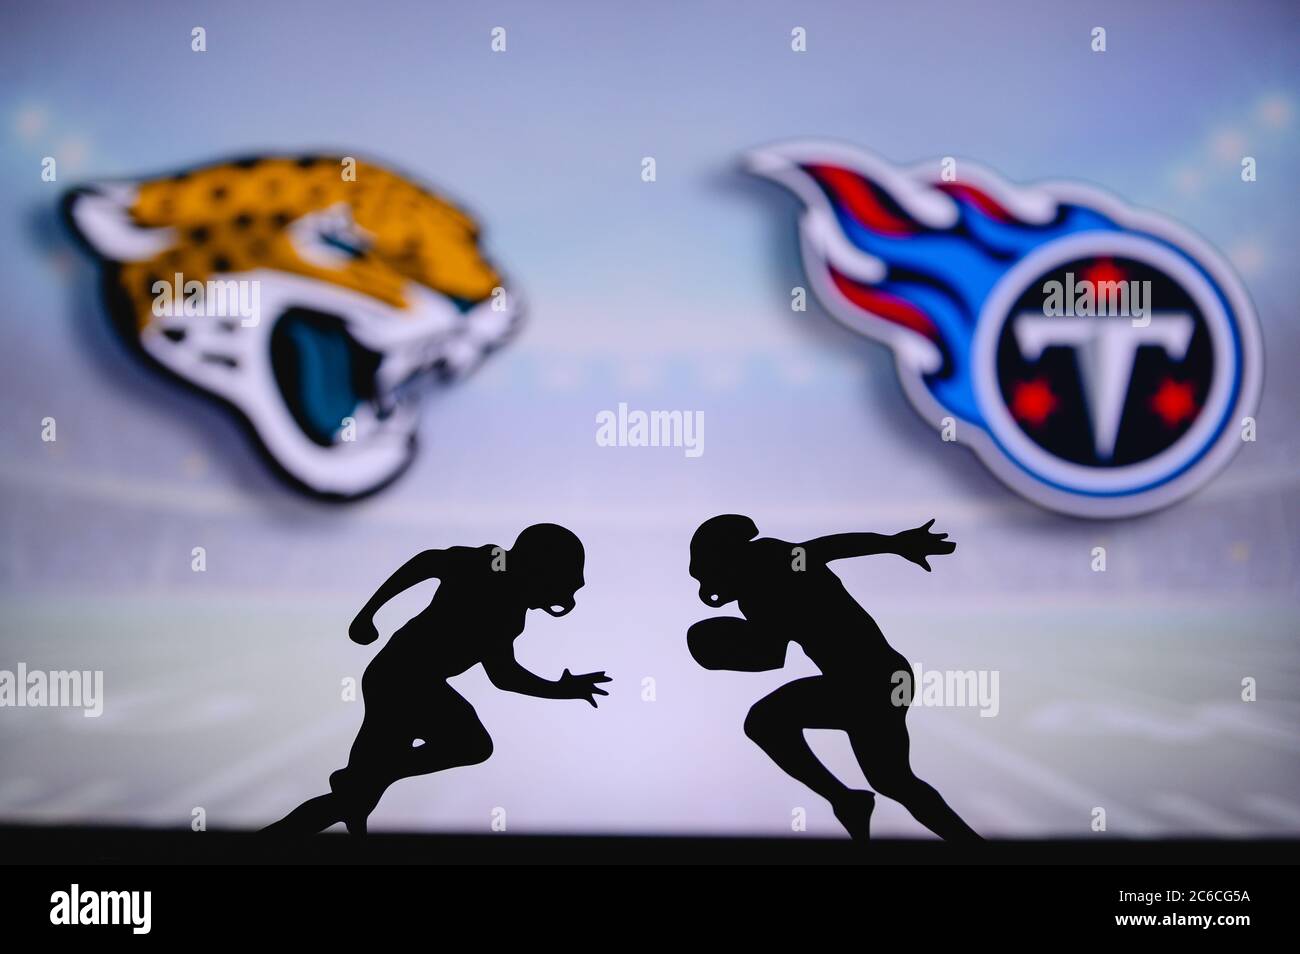 Jacksonville Jaguars contre Tennessee Titans. Affiche NFL Match. Deux joueurs de football américain se font face sur le terrain. Logo des clubs dans ba Banque D'Images